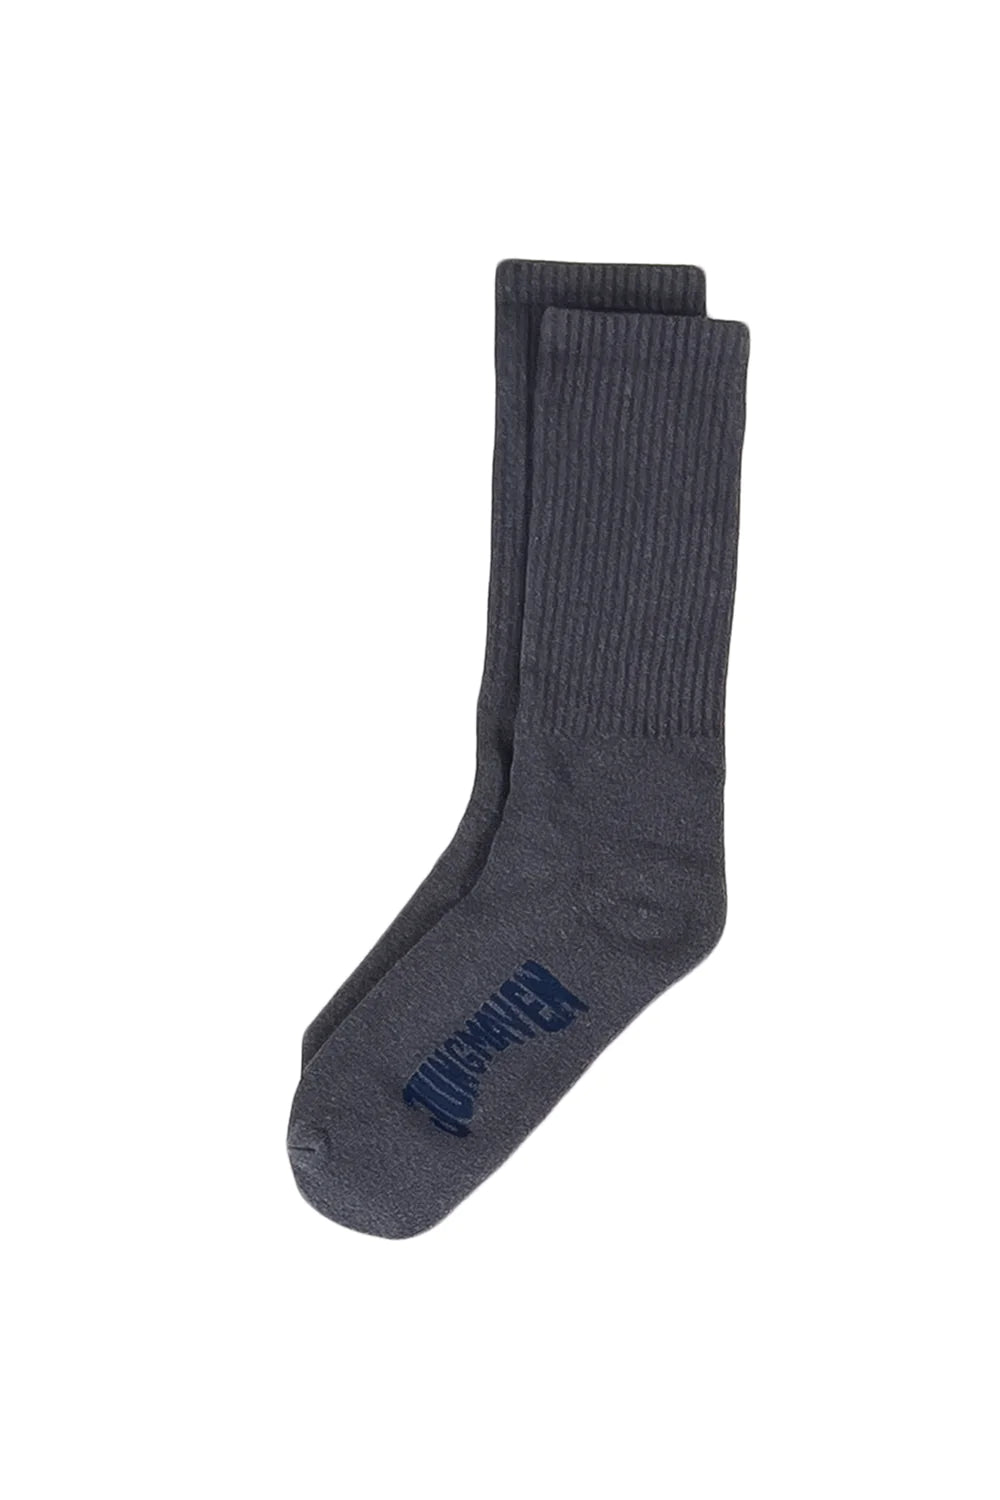 Jungmaven Hemp/Wool Socks / Diesel Grey